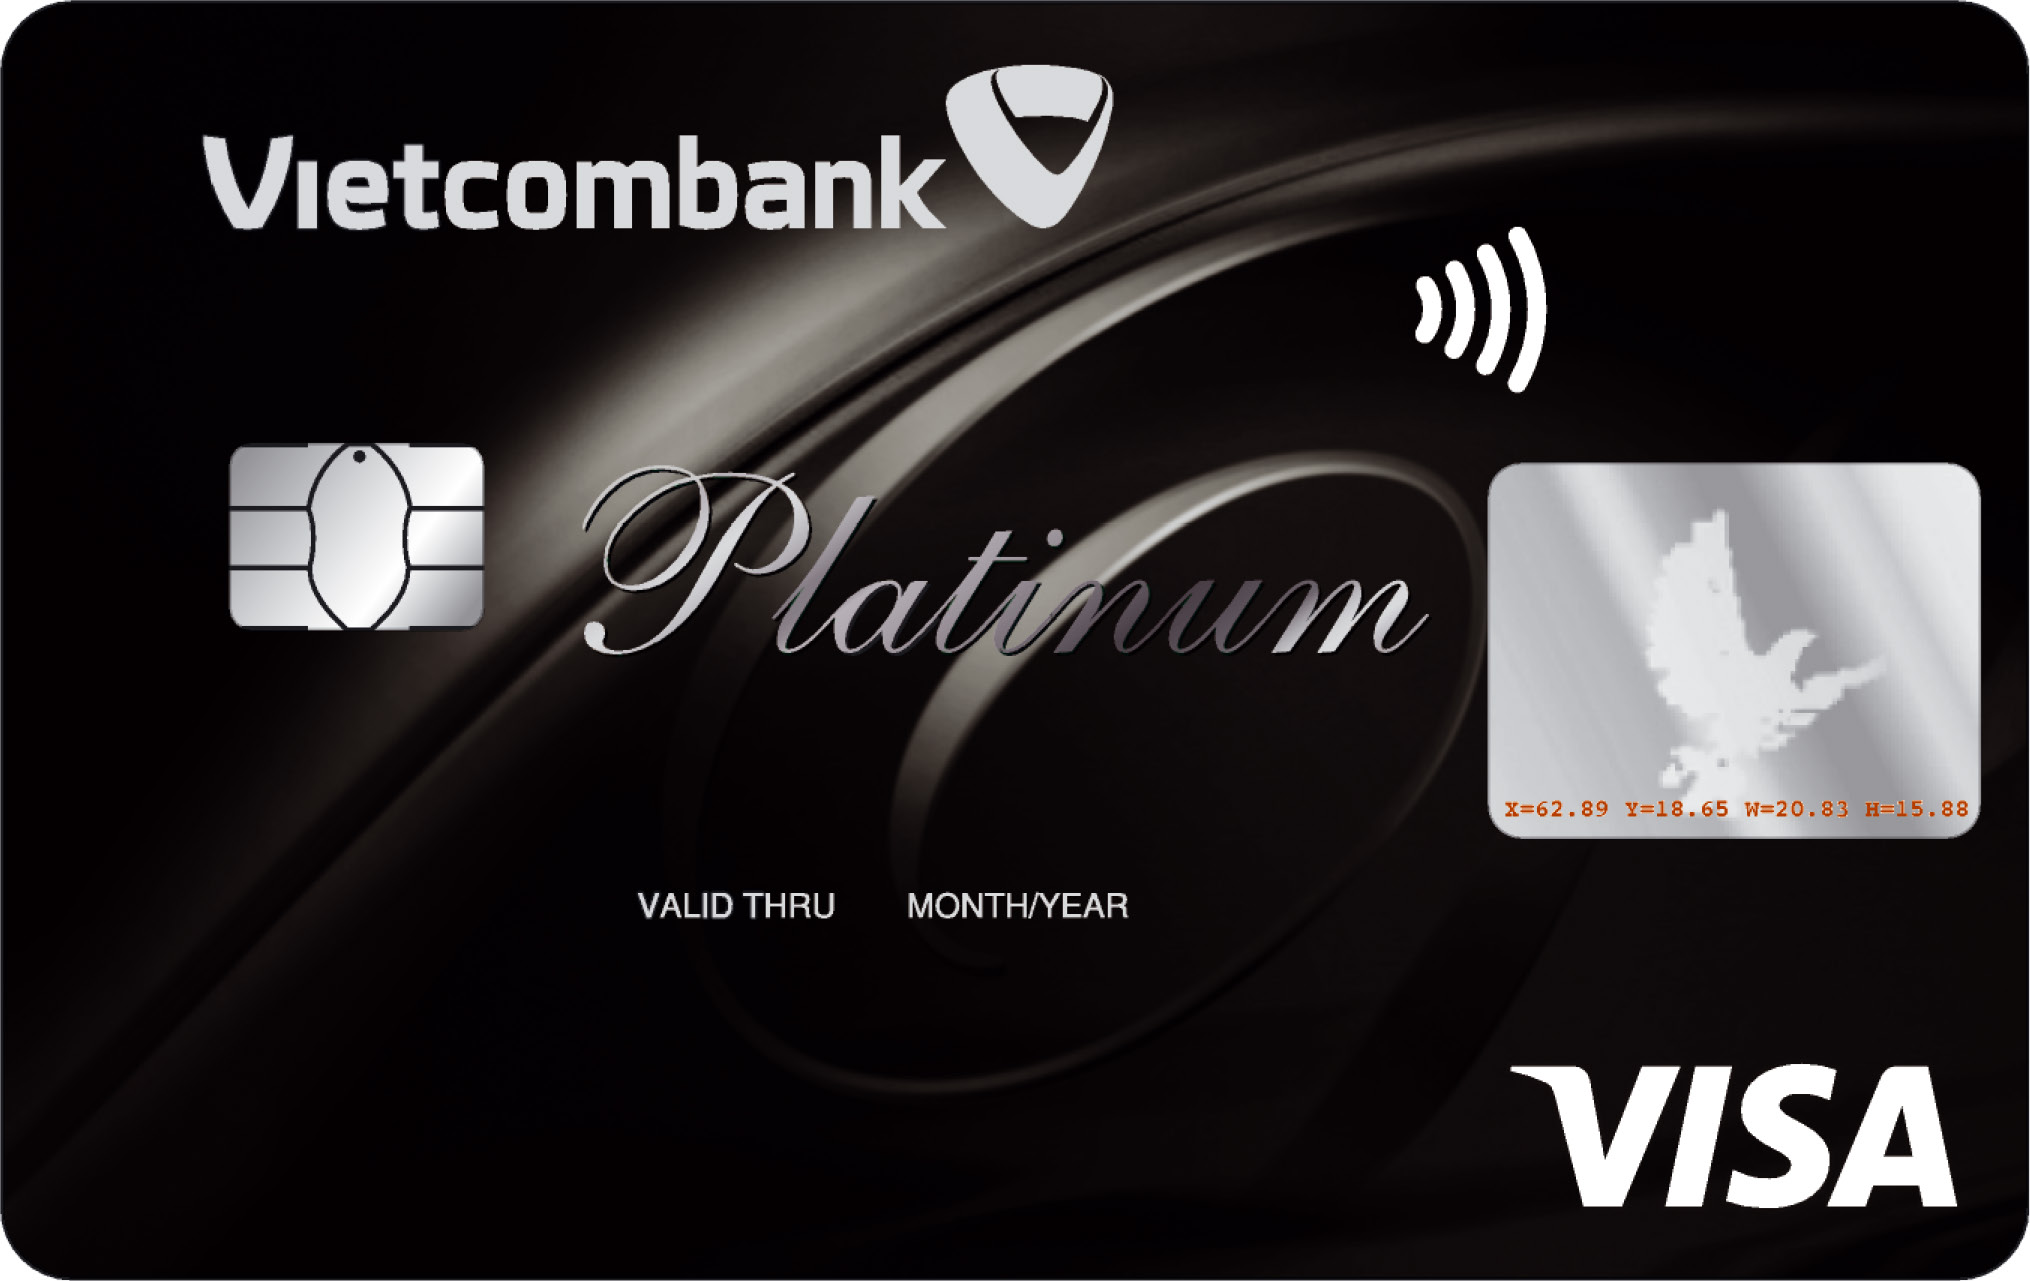 Mở thẻ Vietcombank là nhu cầu chung của nhiều khách hàng hiện nay